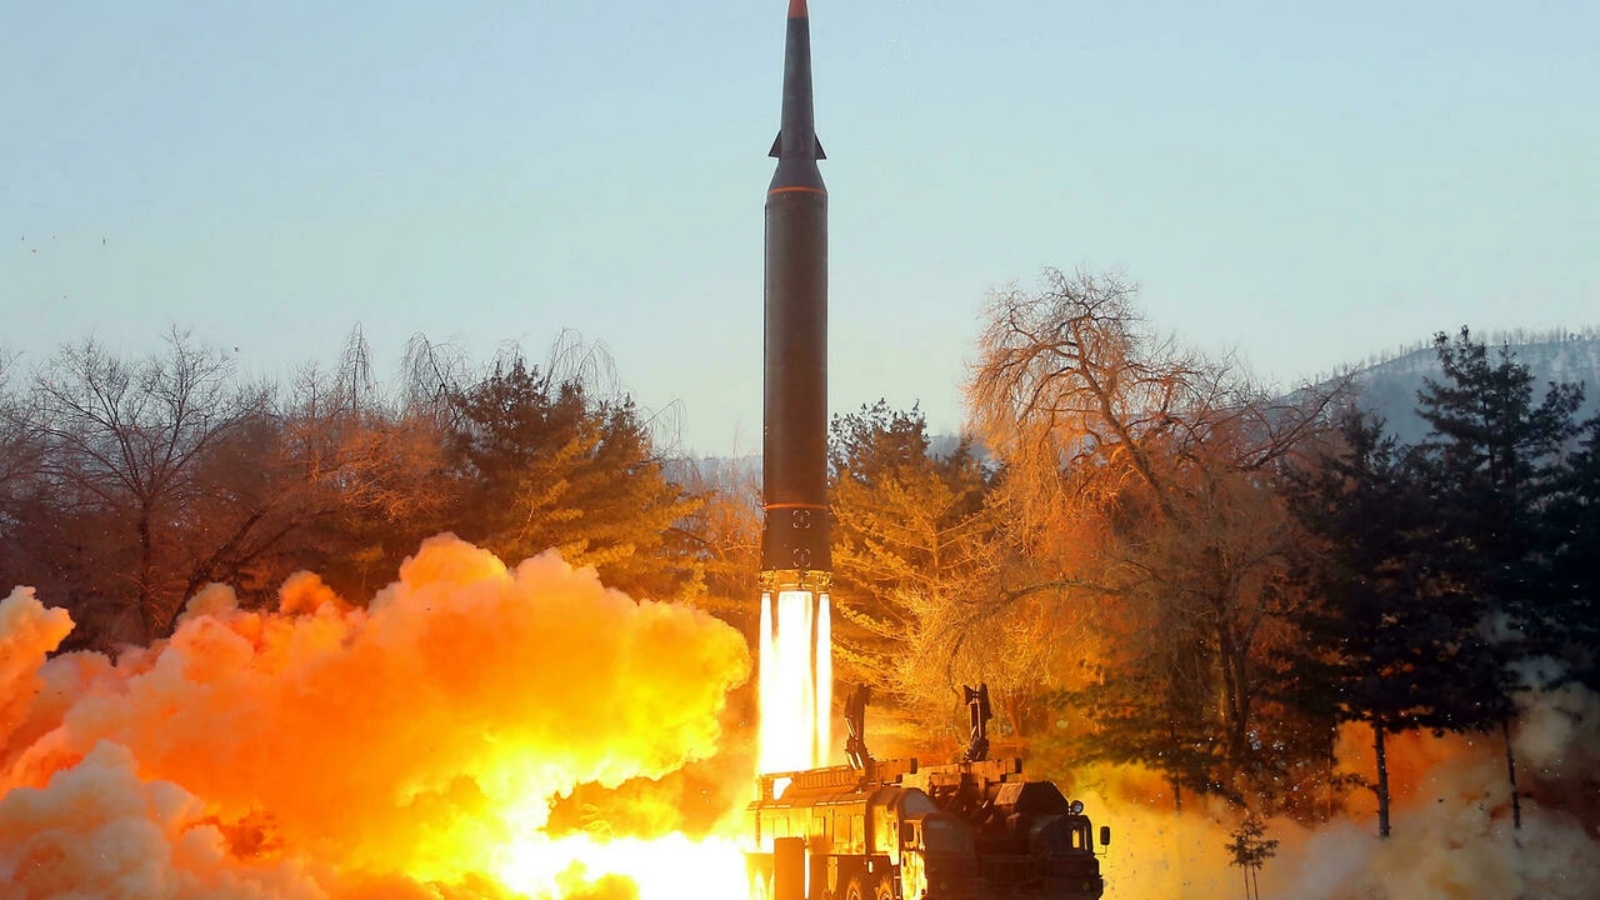 صورة نشرتها وكالة الأنباء الكورية الشمالية الرسمية في 6 كانون الثاني/يناير تظهر ما وصفته بأنه إطلاق صاروخ أسرع من الصوت في 5 من الشهر من مكان غير معروف في كوريا الشمالية